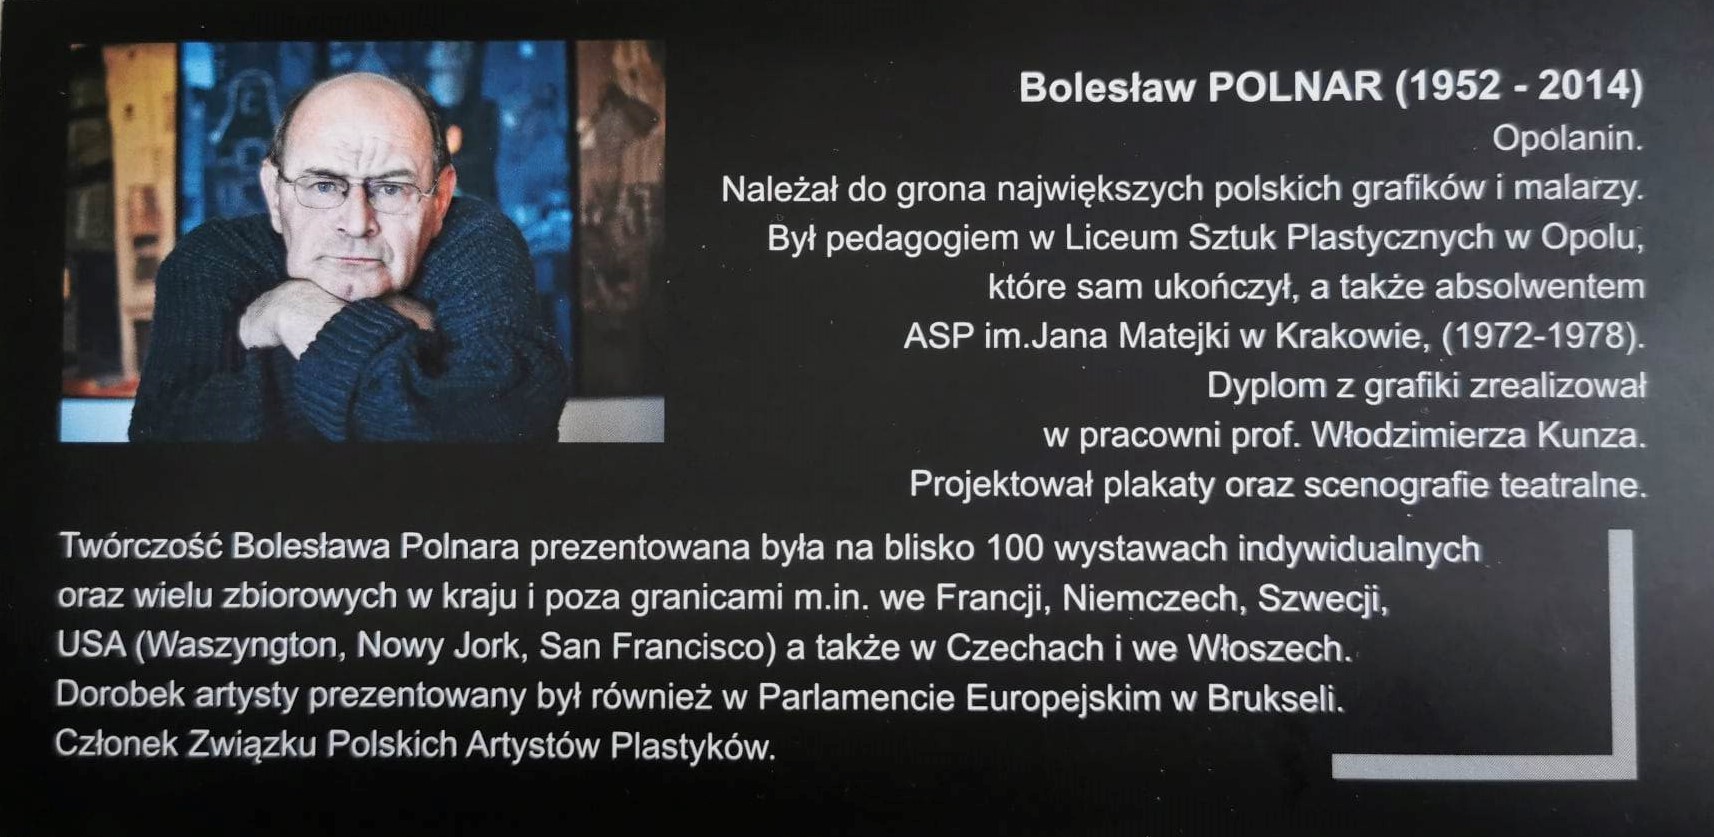 Ulotka opisująca Bolesława Polnara